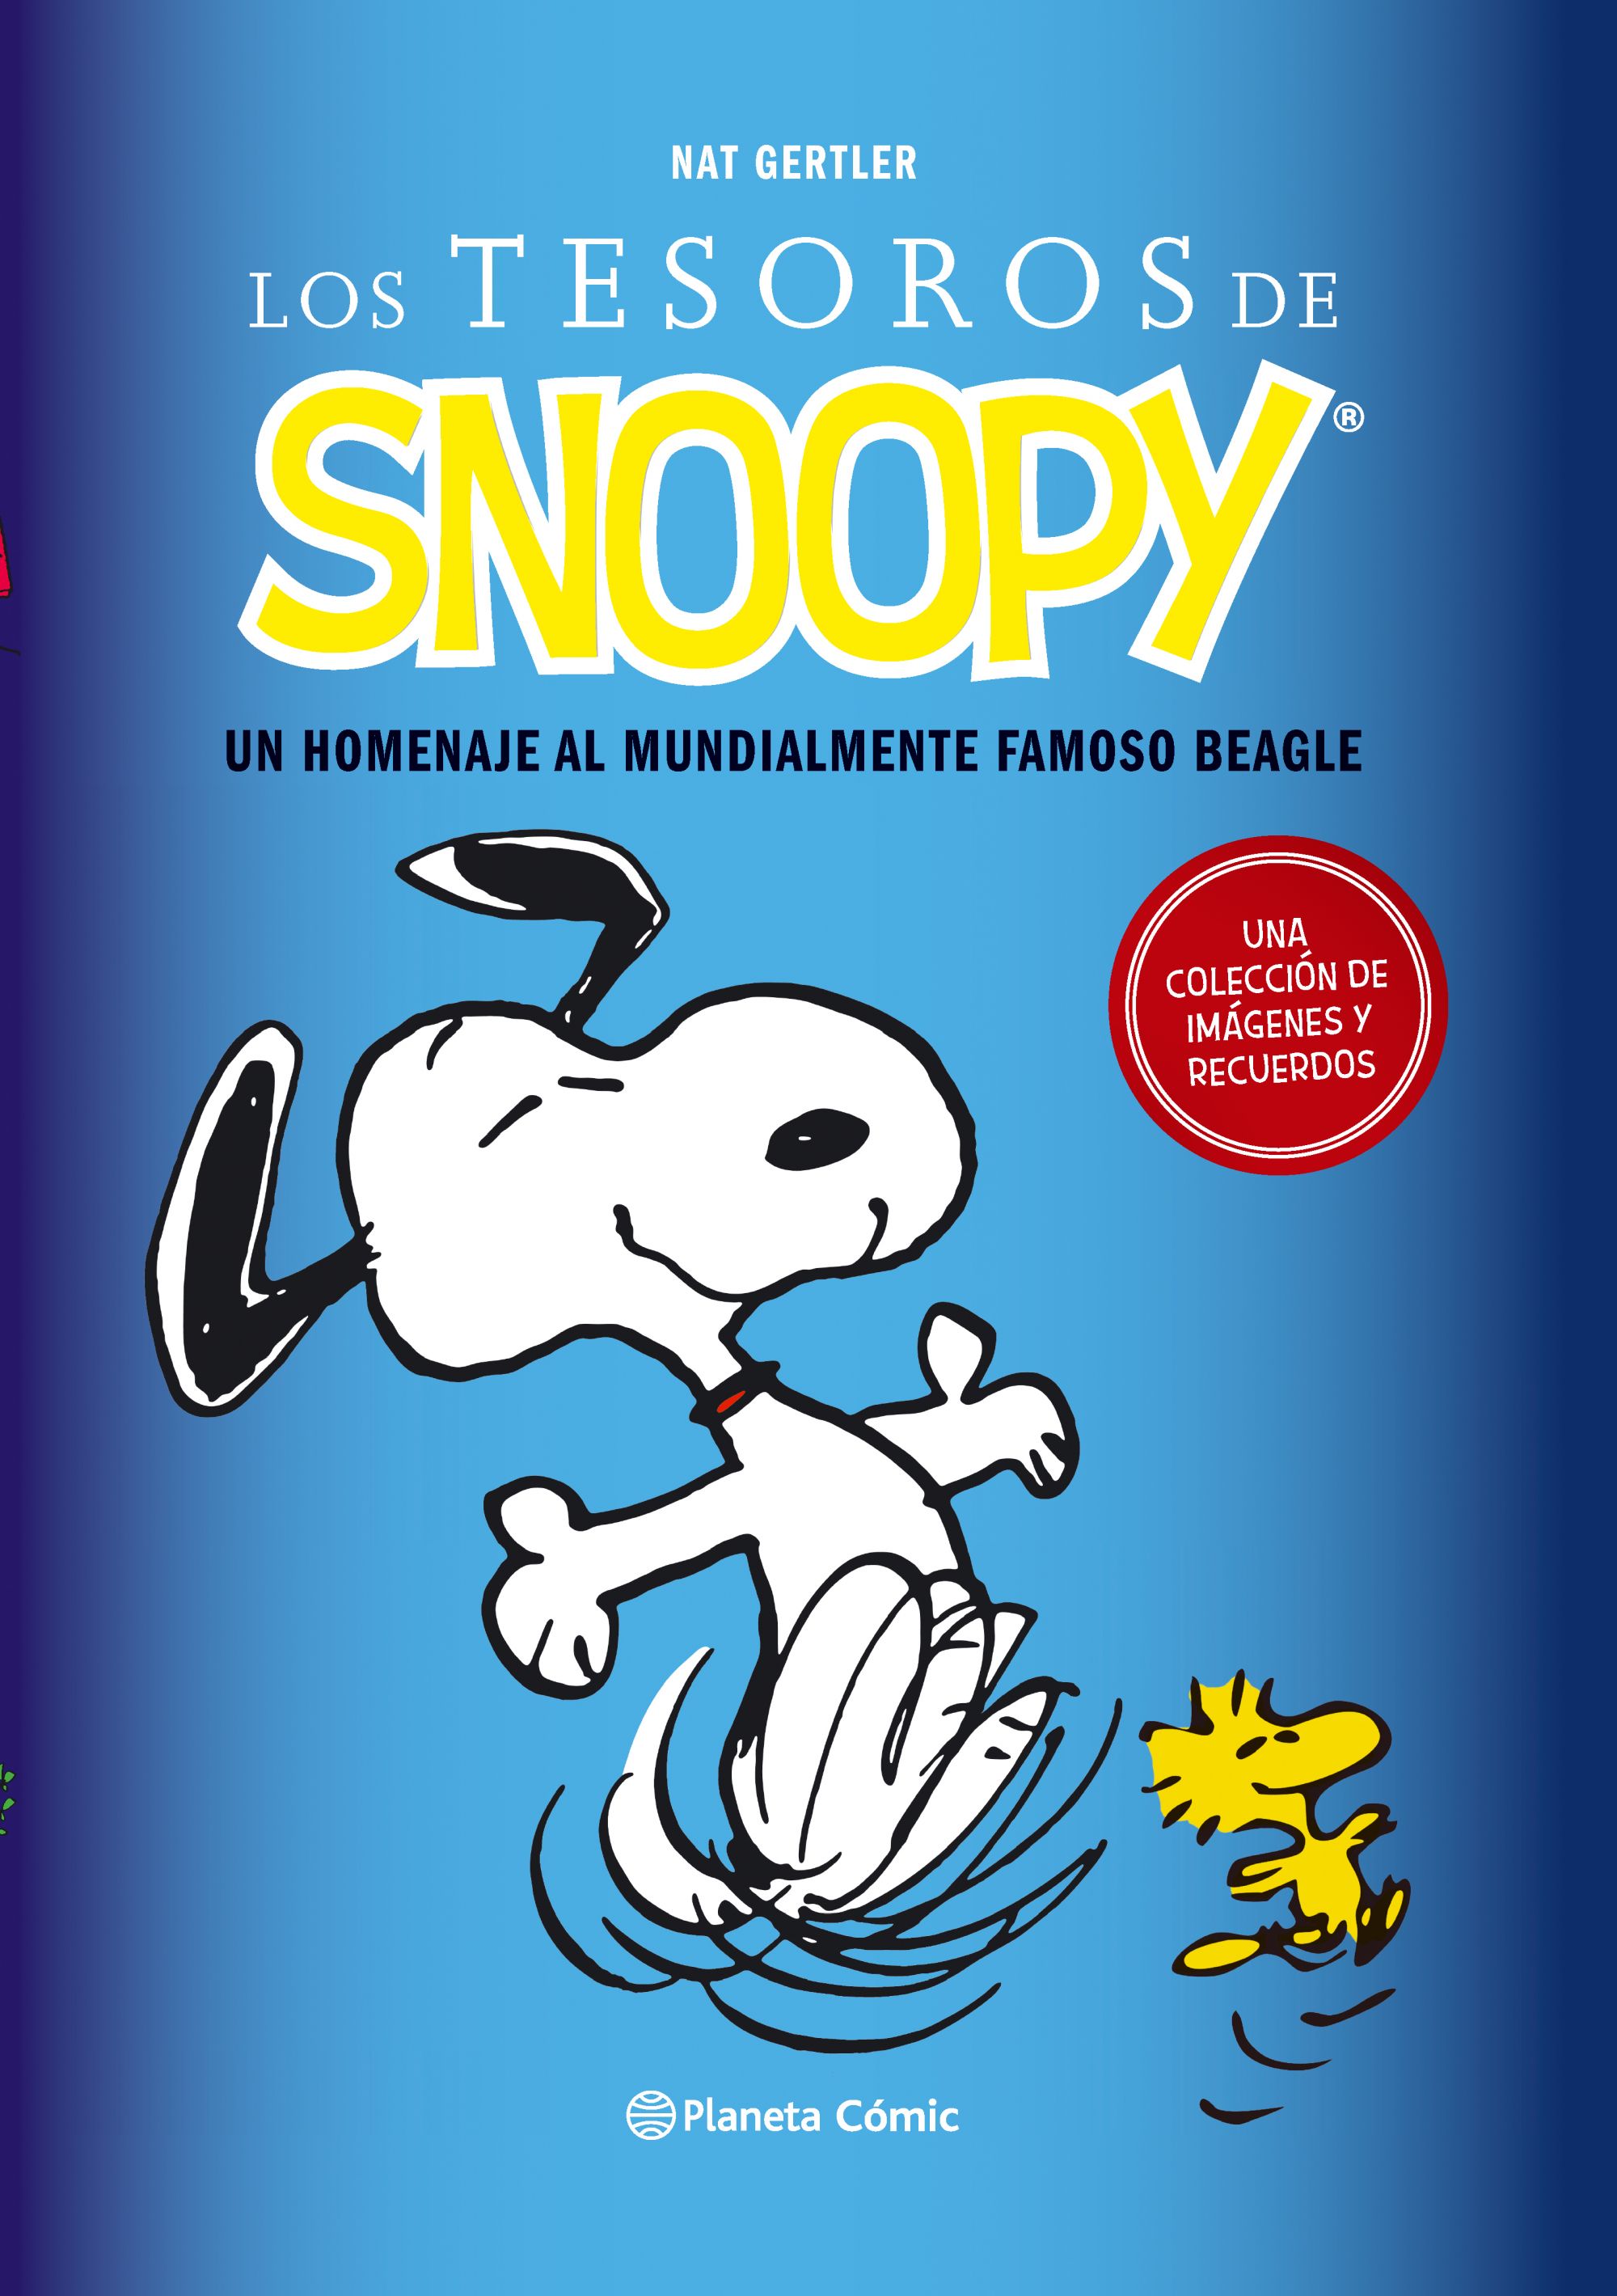 Los tesoros de Snoopy', de Nat Gertler | CÓMIC PARA TODOS